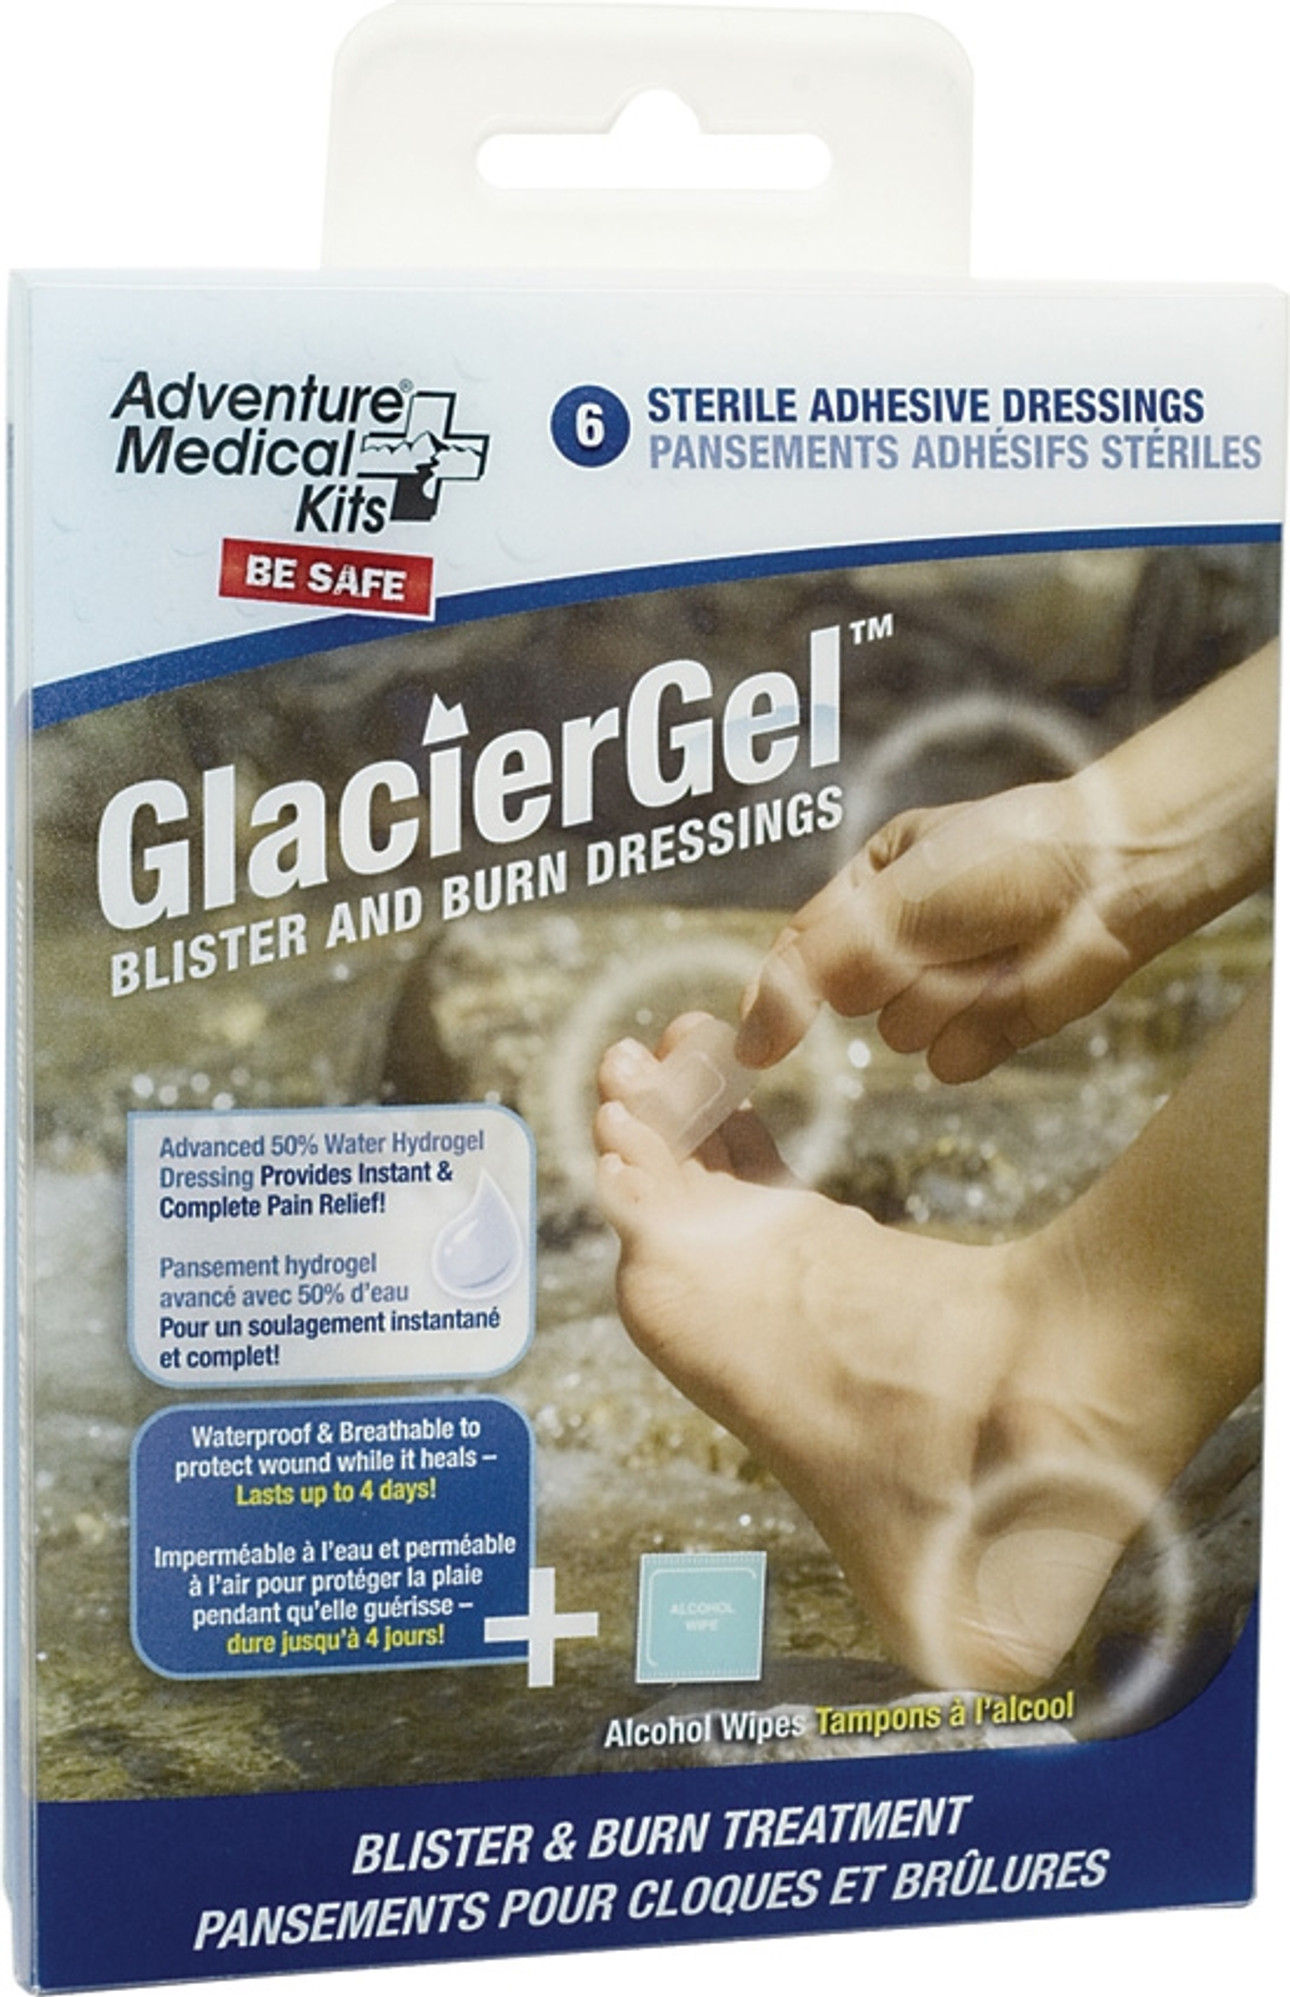 Adventure Medical GlacierGel Blister & Burn